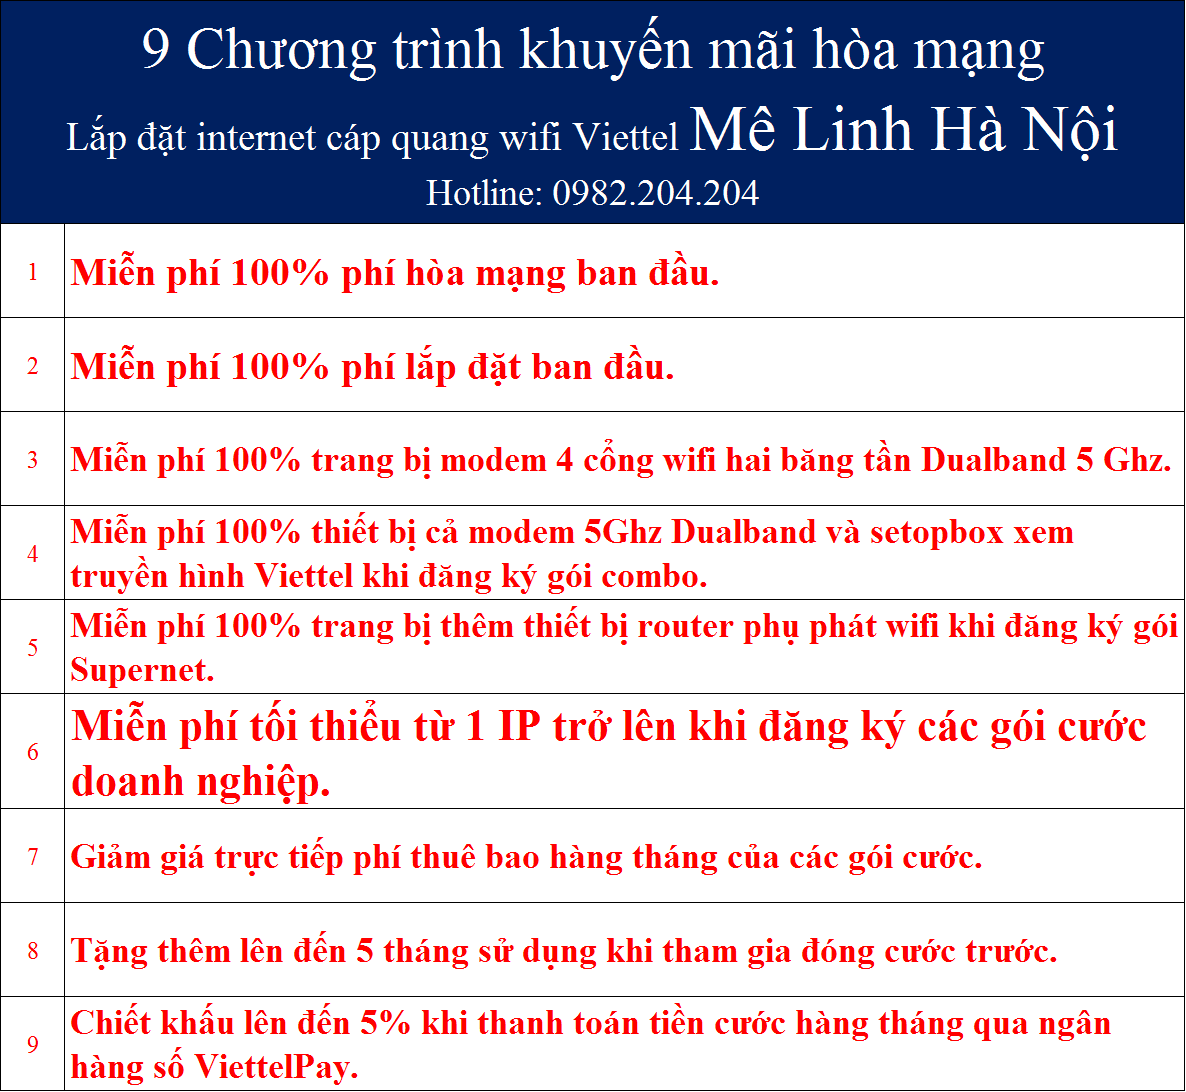 Khuyến mãi internet Viettel Mê Linh Hà Nội